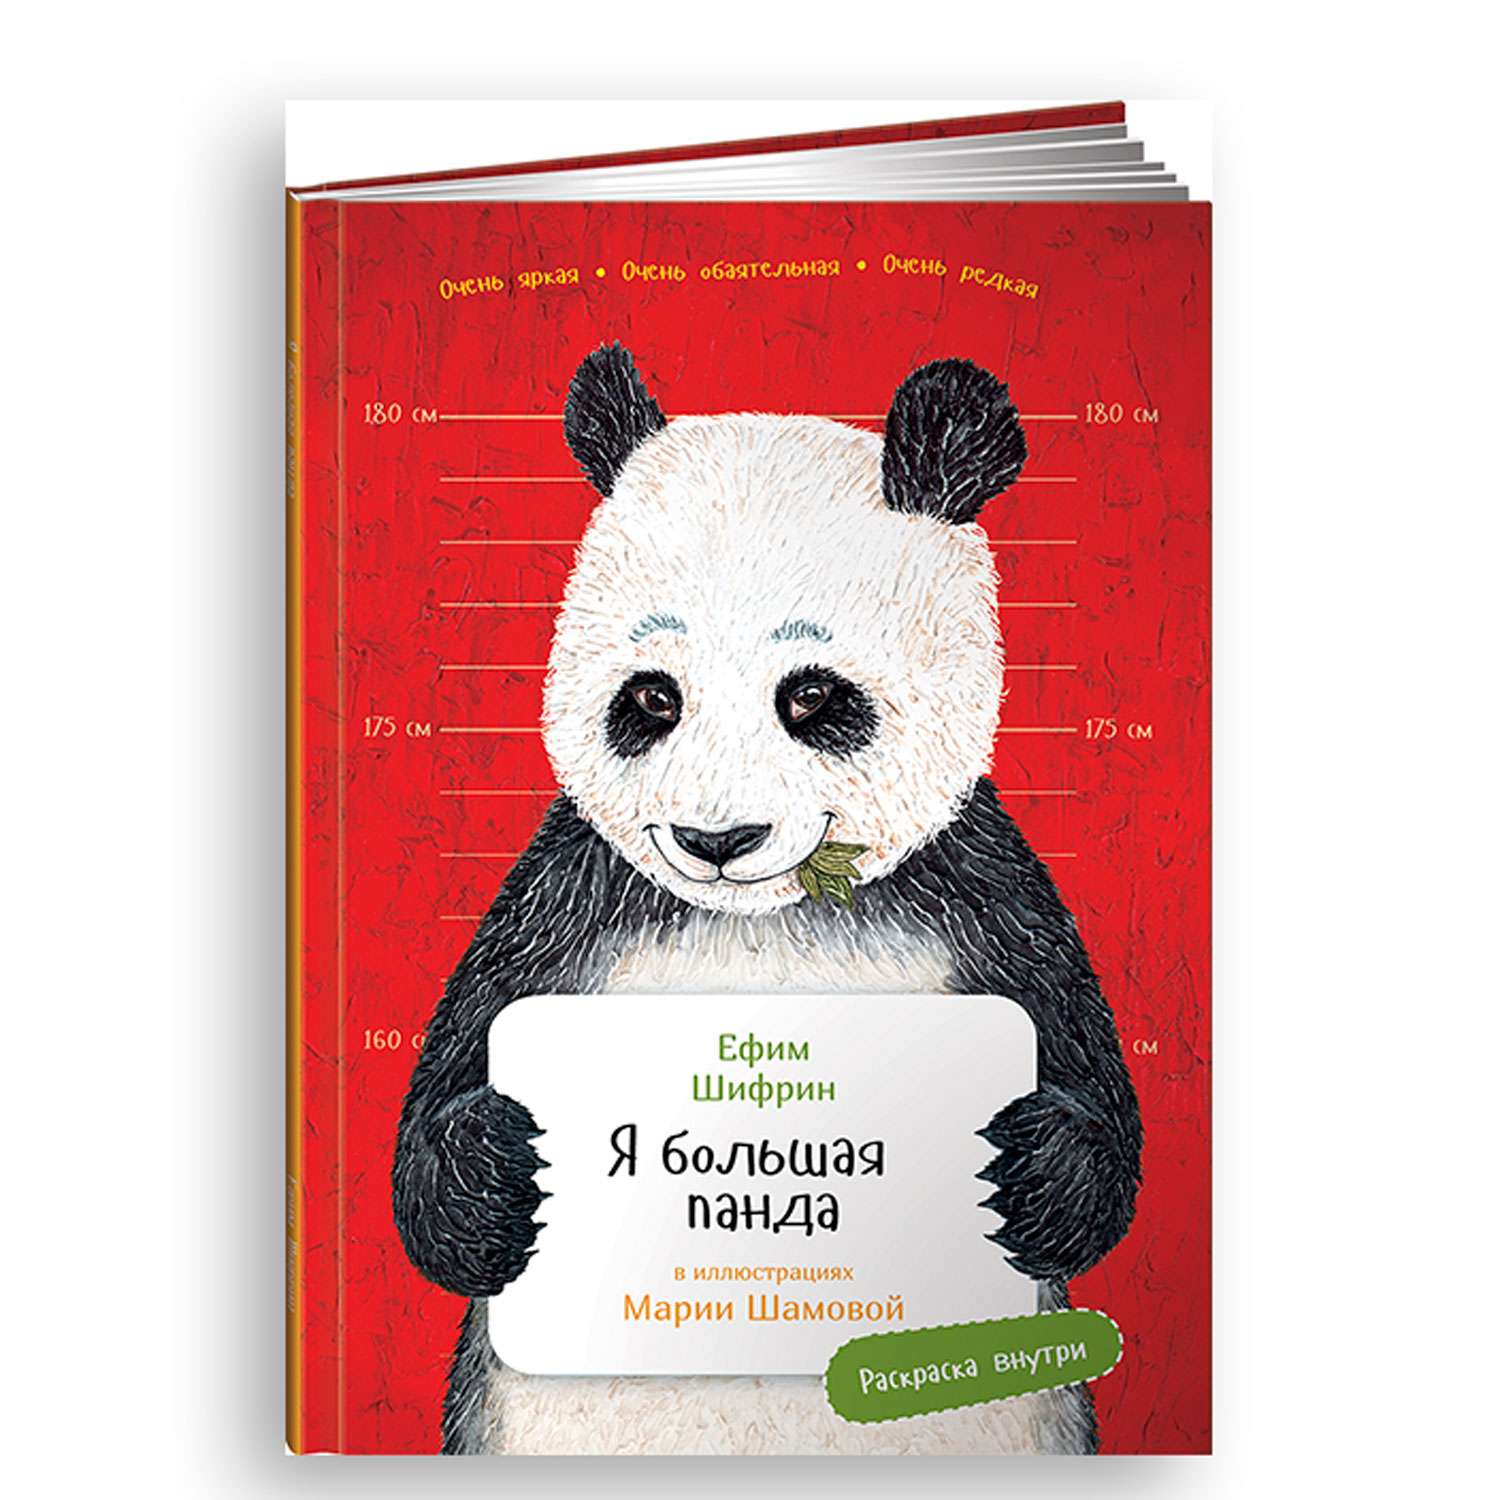 Книга Альпина. Дети Я большая панда с раскрасками - фото 1